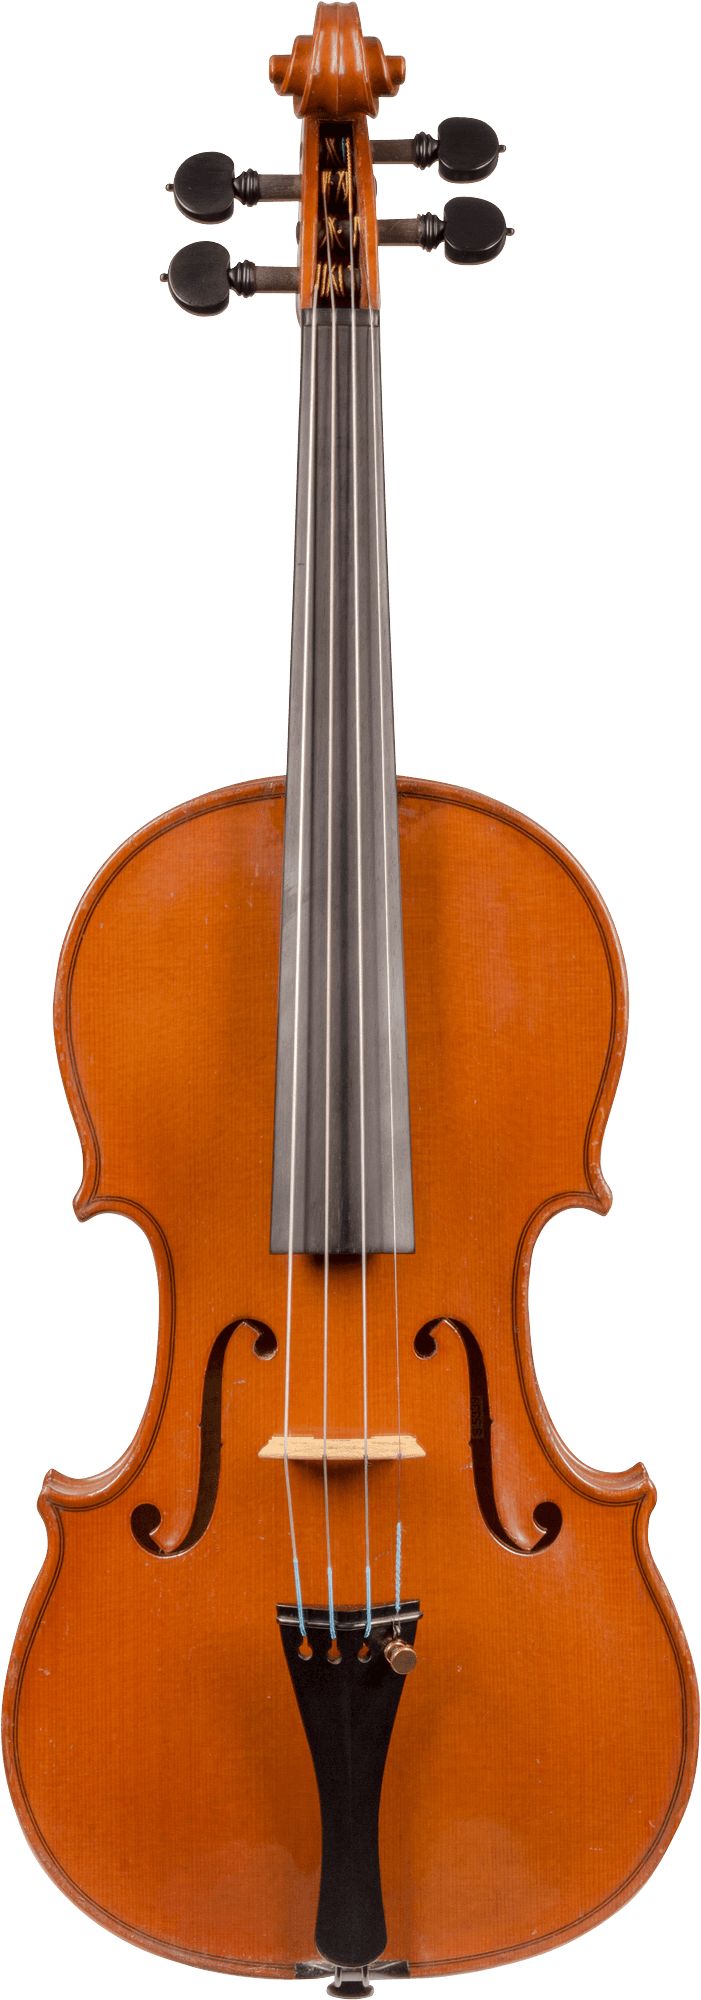 German Workshop Violin, branded E.H. Roth